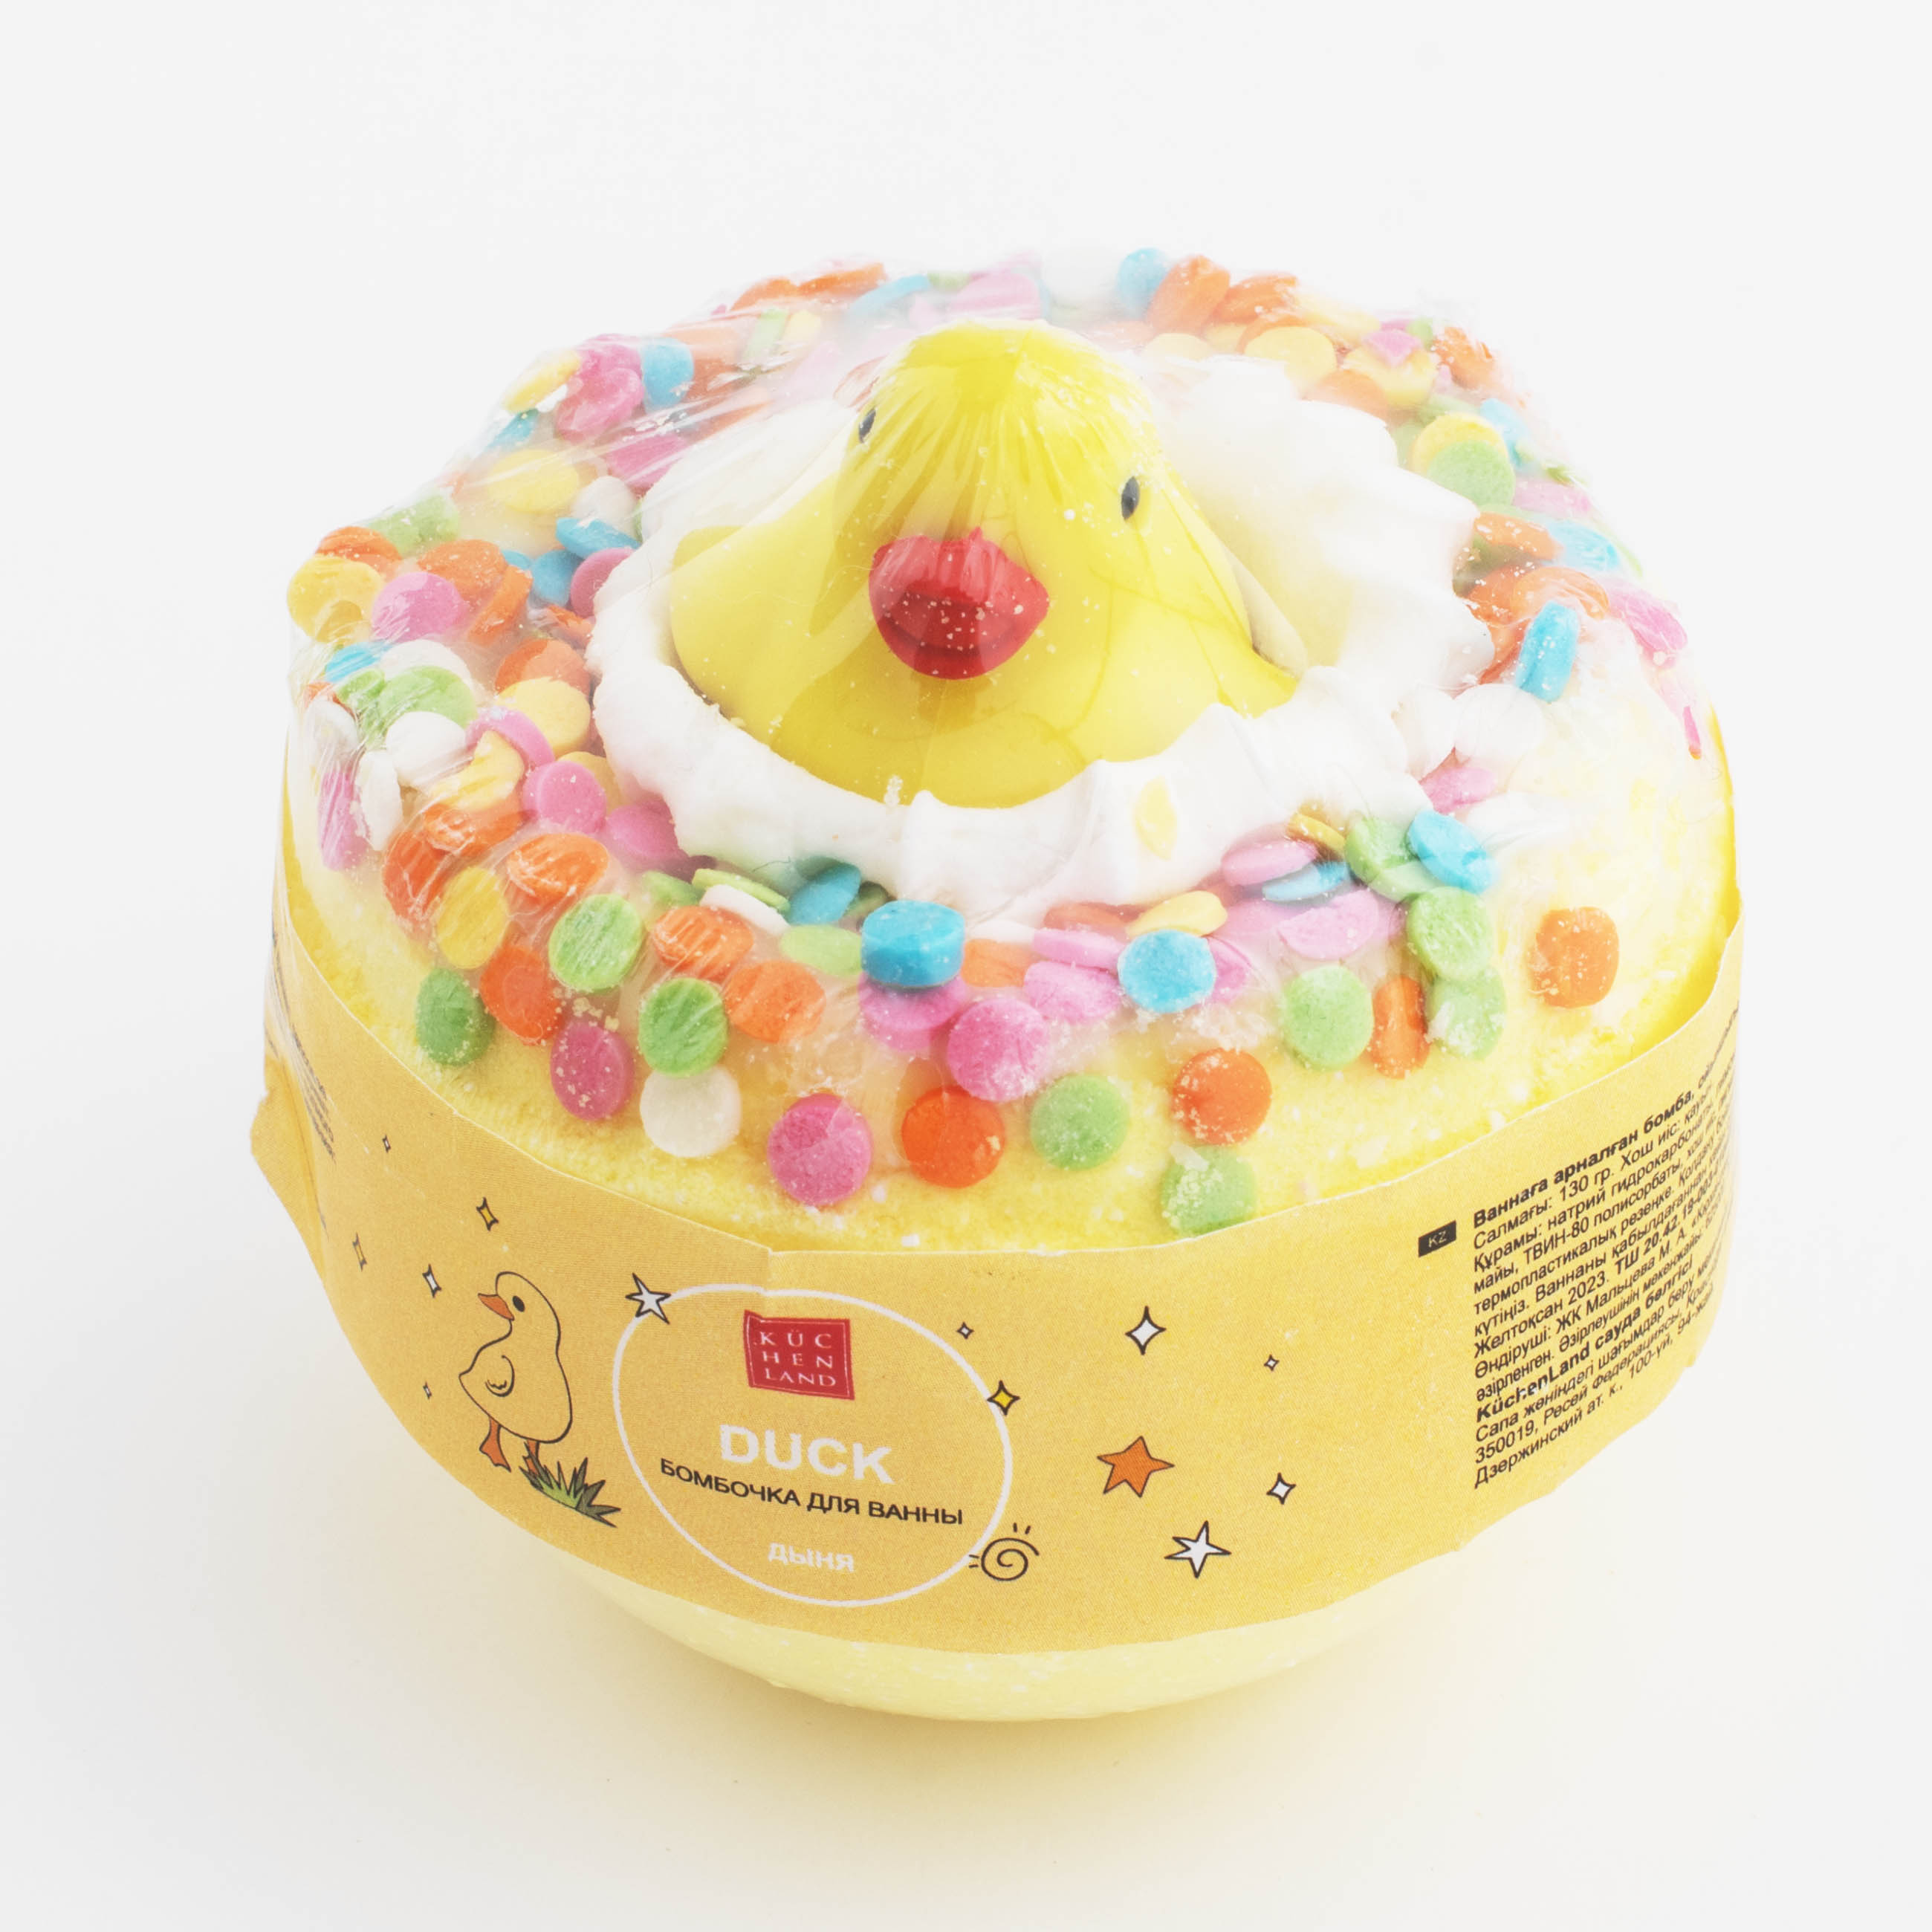 Бомбочка для ванны, 130 гр, с игрушкой, Дыня, Утка, Duck yellow изображение № 5